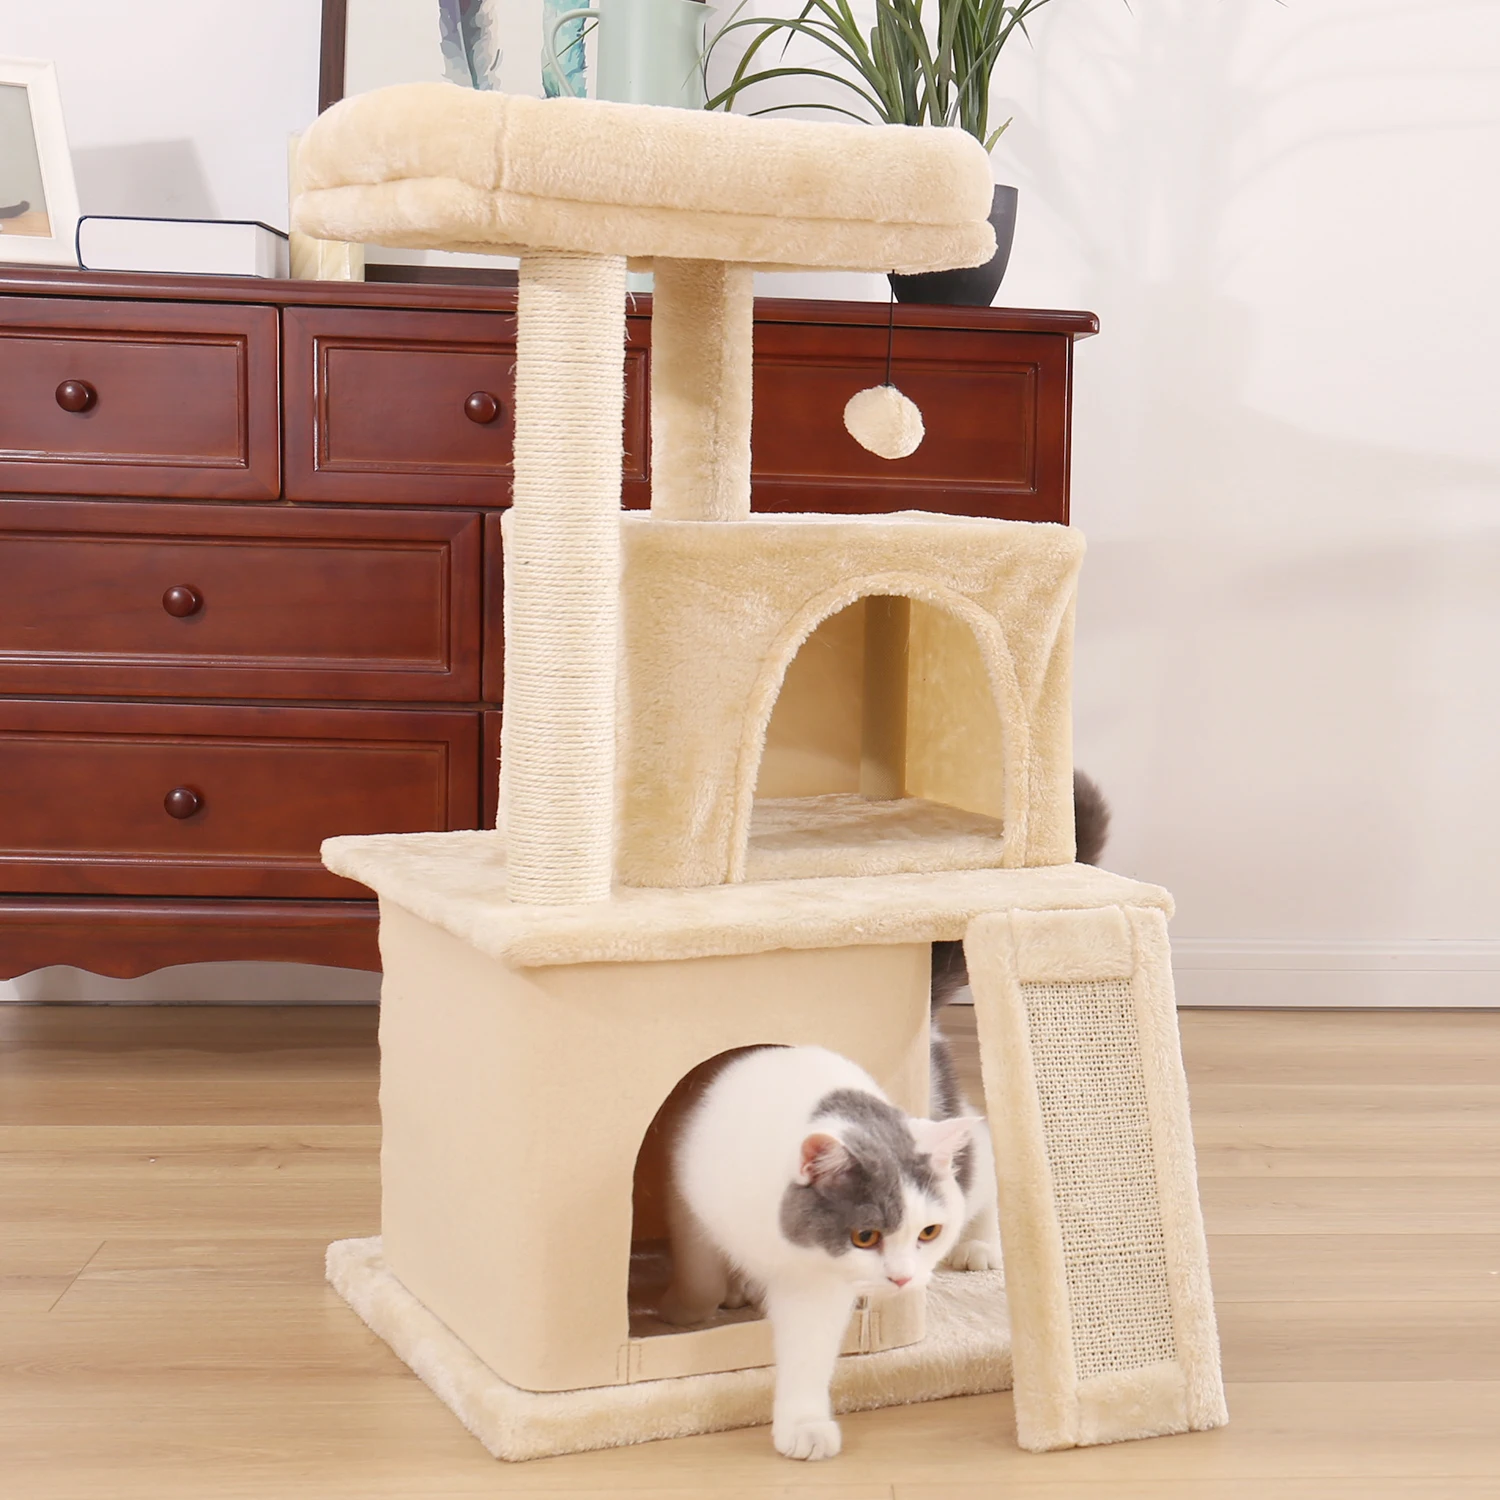 Домашняя Кошка альпинистская рама Кошка Когтеточка дерево скребок полюс мебель тренажерный зал дом игрушка для прыжков кошек платформа